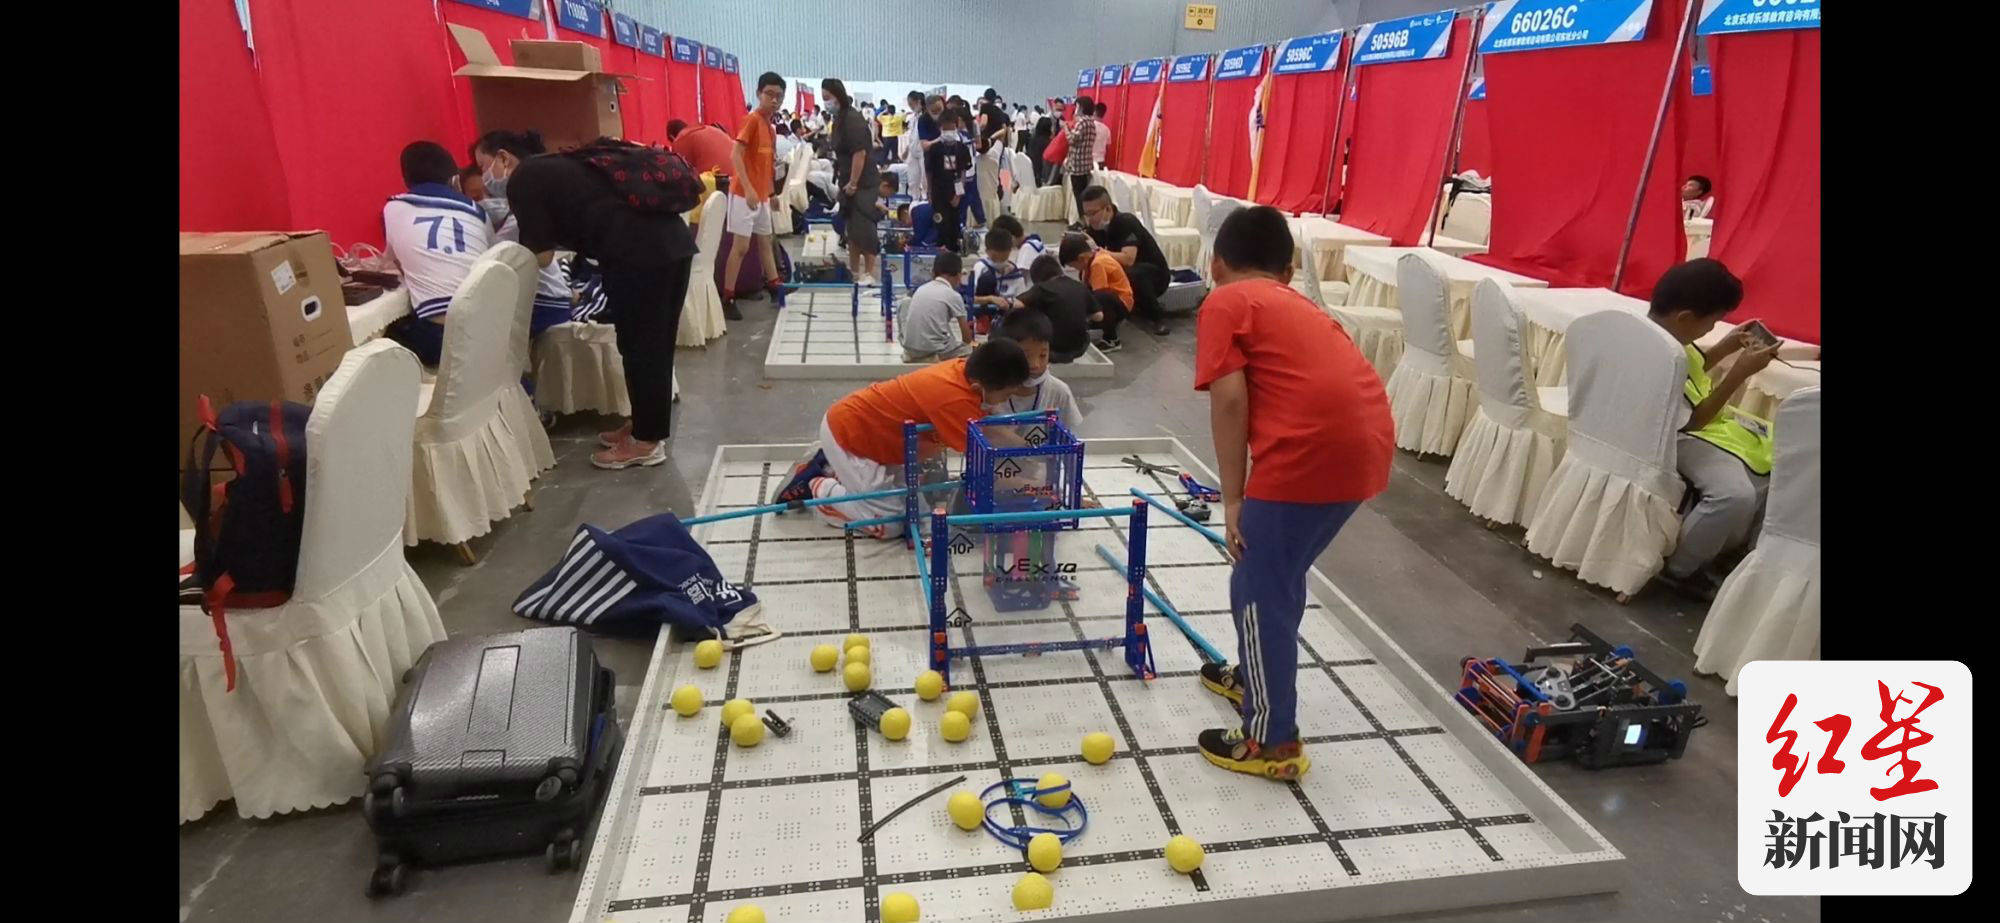 文化|VEX机器人成都西区赛开赛 IGS博览会上演“铁甲大战”